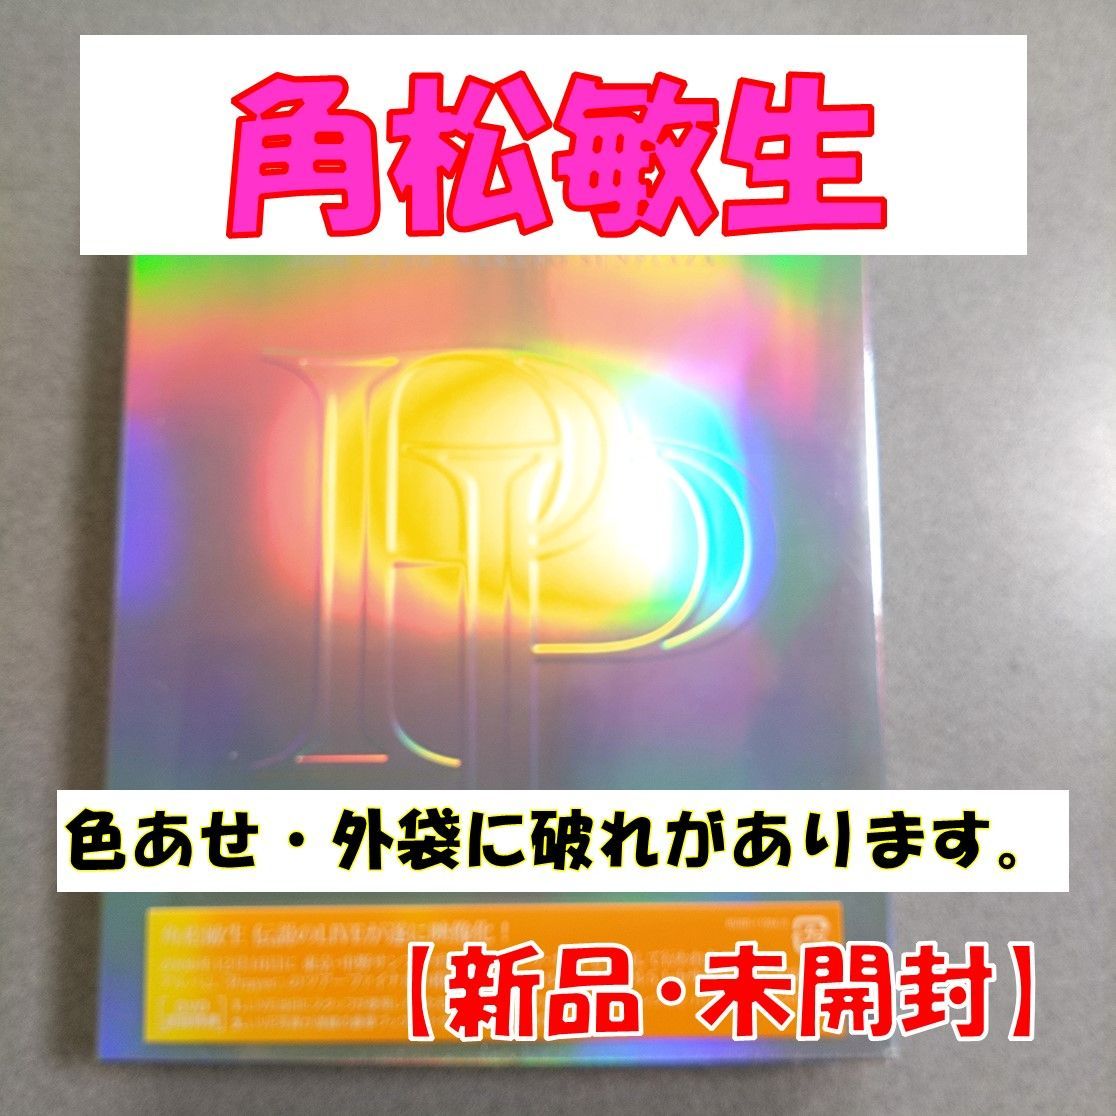 DVD】角松敏生【Player's Prayer: Special 2006.12.16 Nakano  Sunplaza】【ビニール破れ・色あせあり】【初回生産限定盤】【新品 未開封】【匿名配送】即購入OK - メルカリ